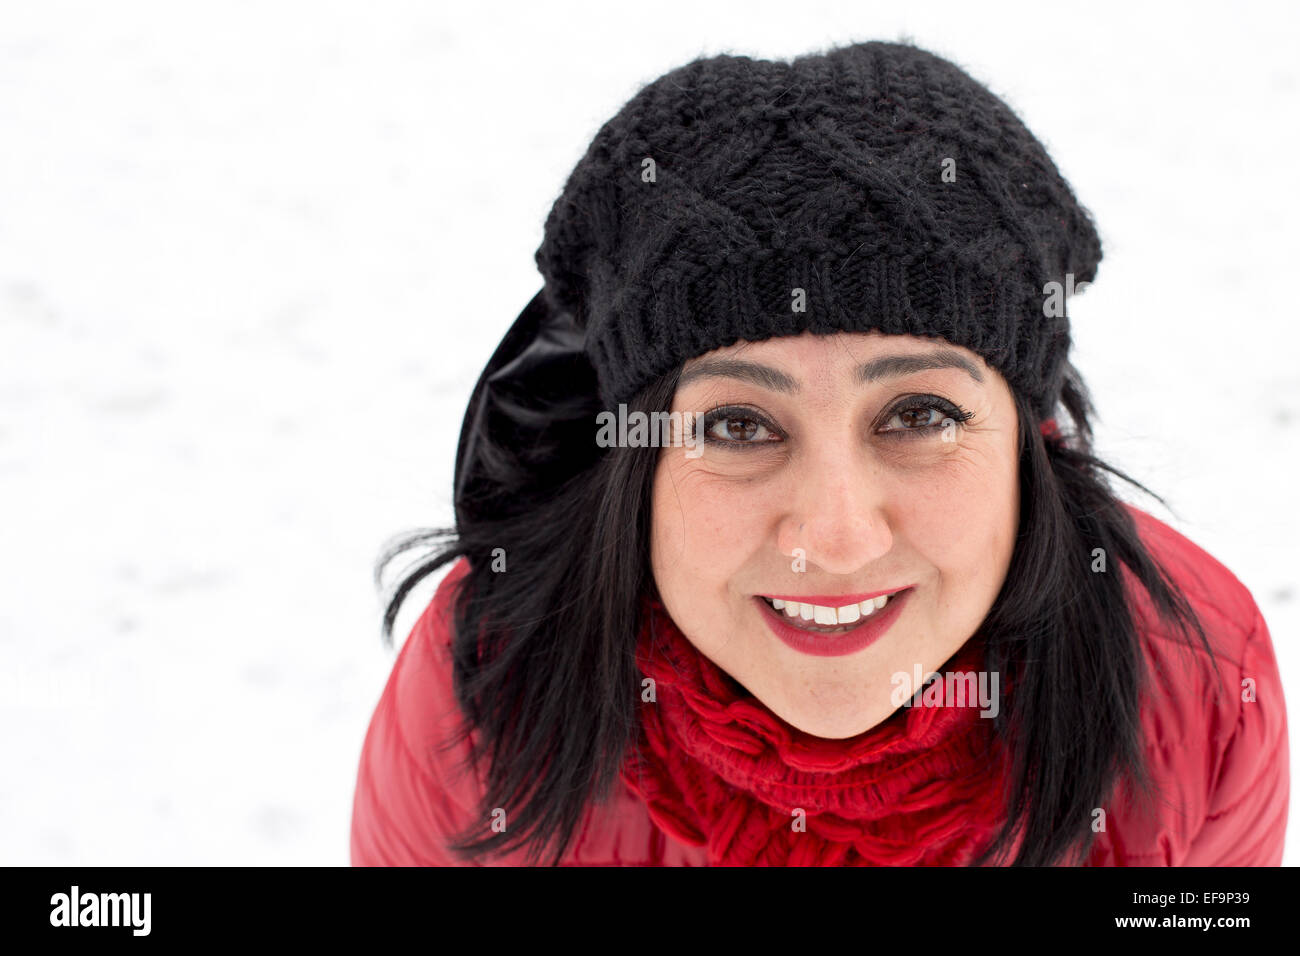 Schwarze behaarte Türkinnen auf einem verschneiten Tag Hintergrund in die Kamera schaut Stockfoto